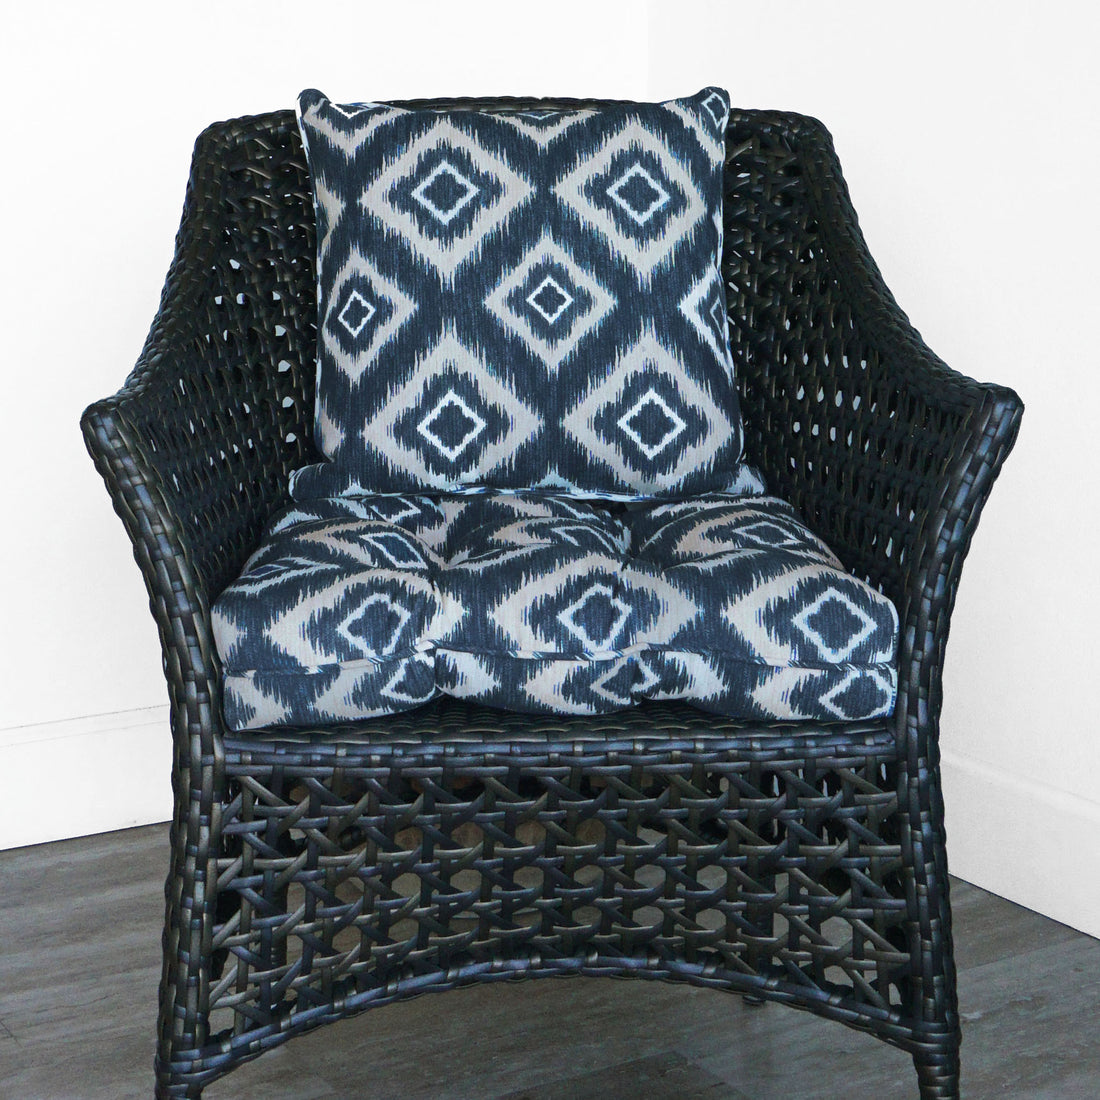 Set of 2 Mykonos Indoor/Outdoor Seat Cushions | Denim | 20"x20"x3"